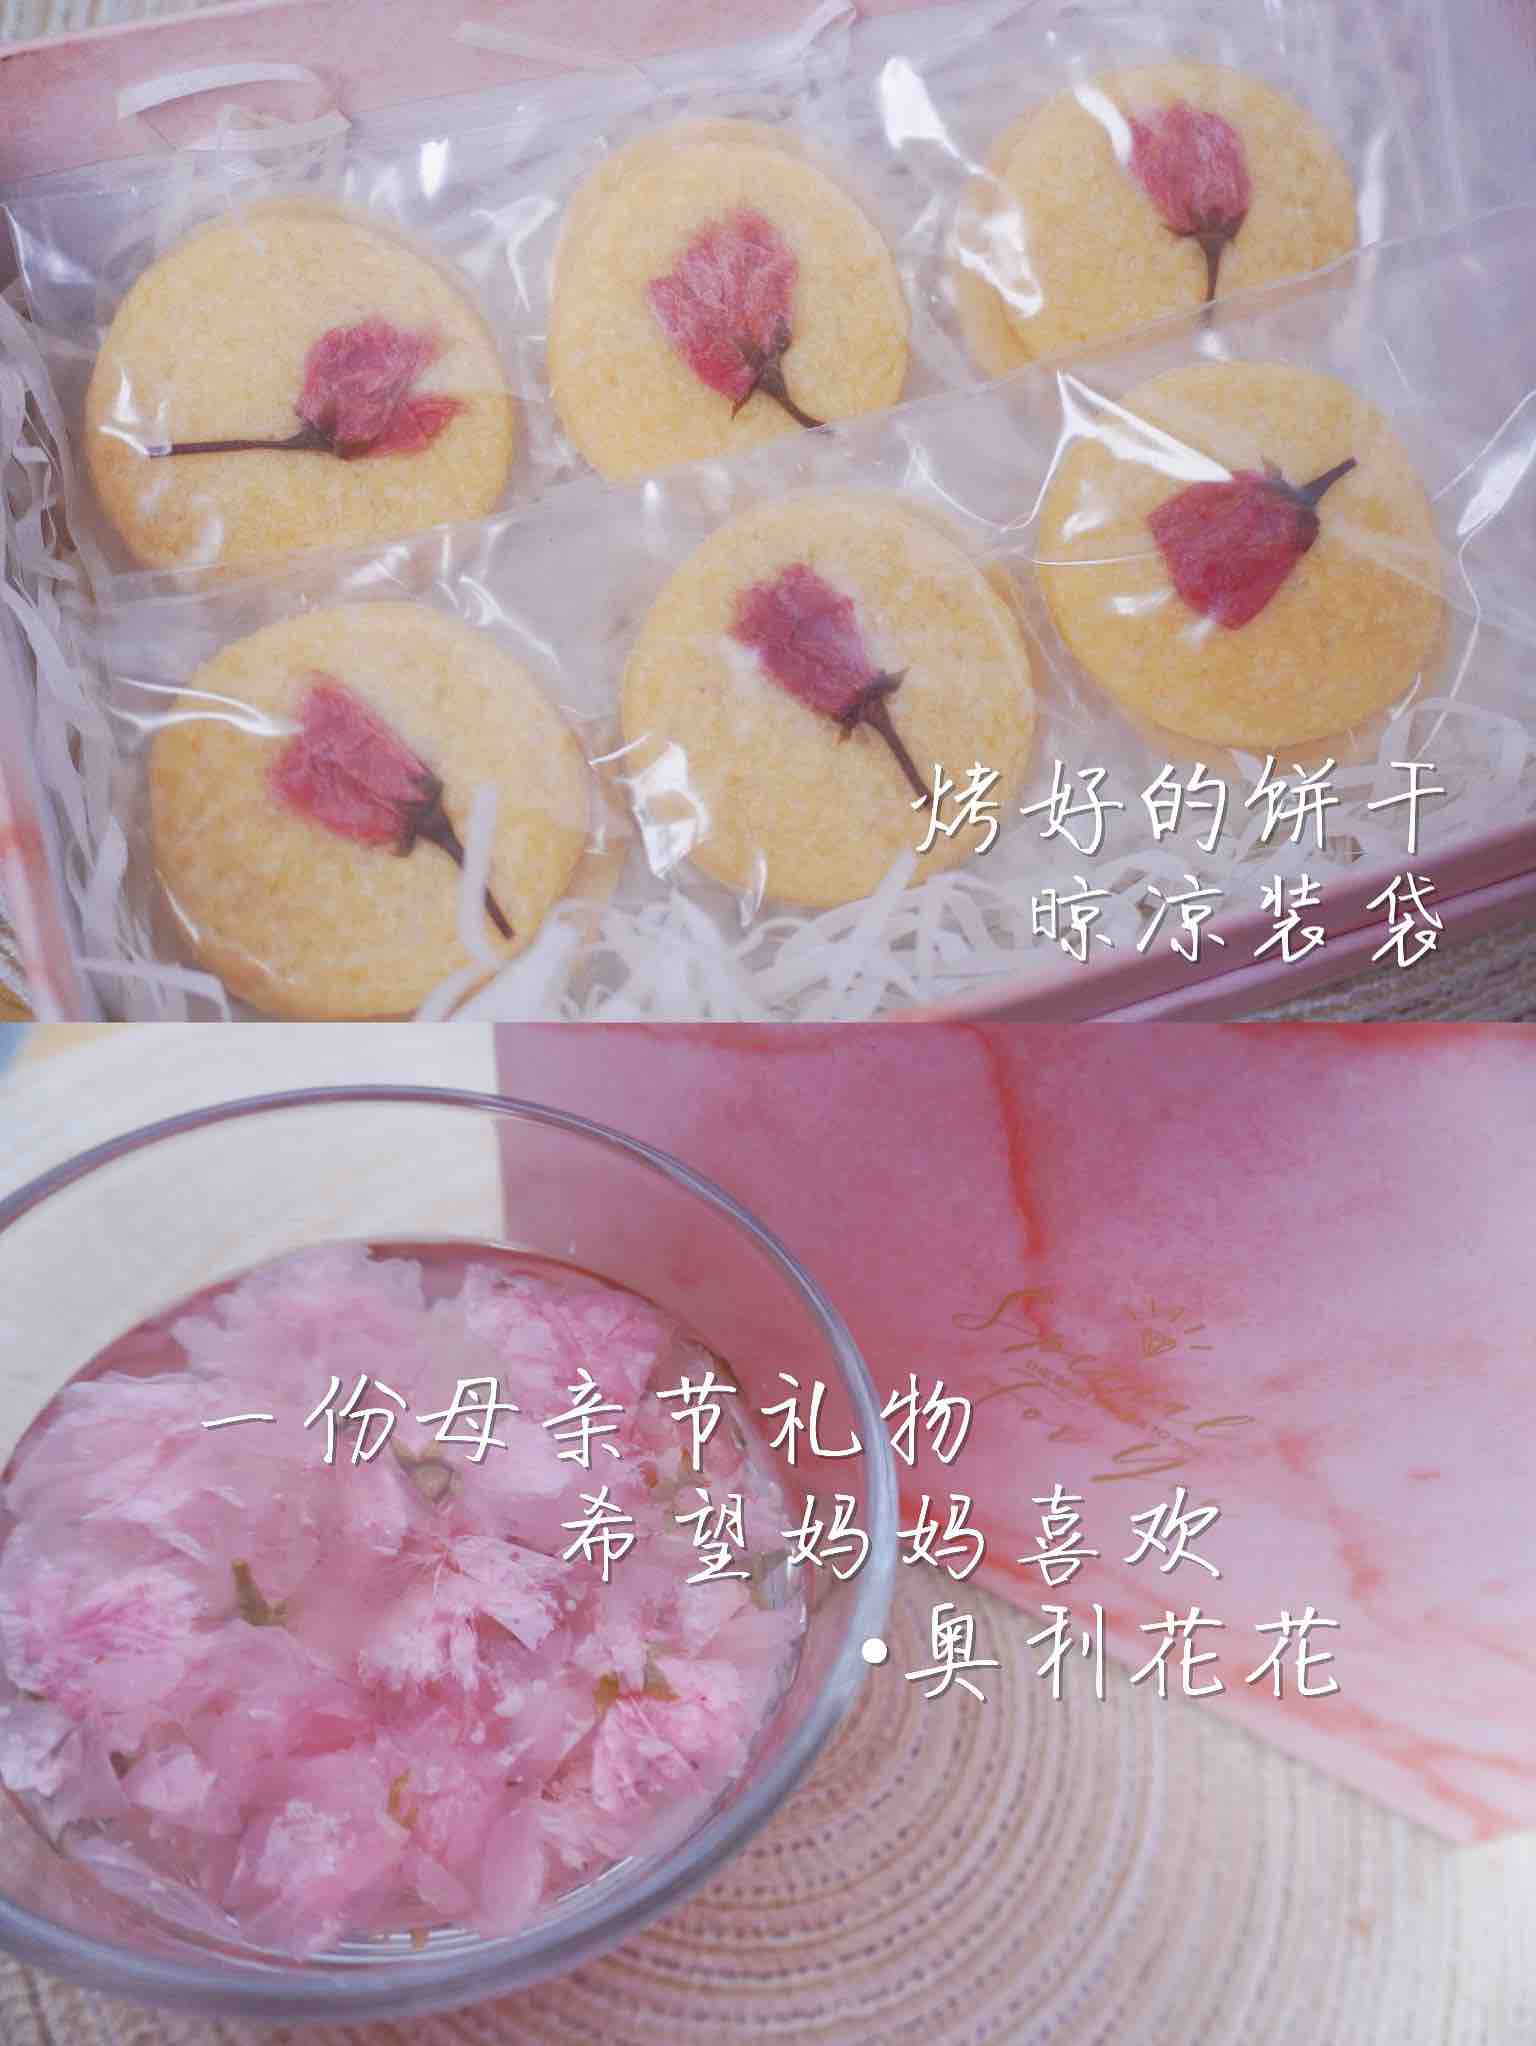 Flower Biscuits recipe